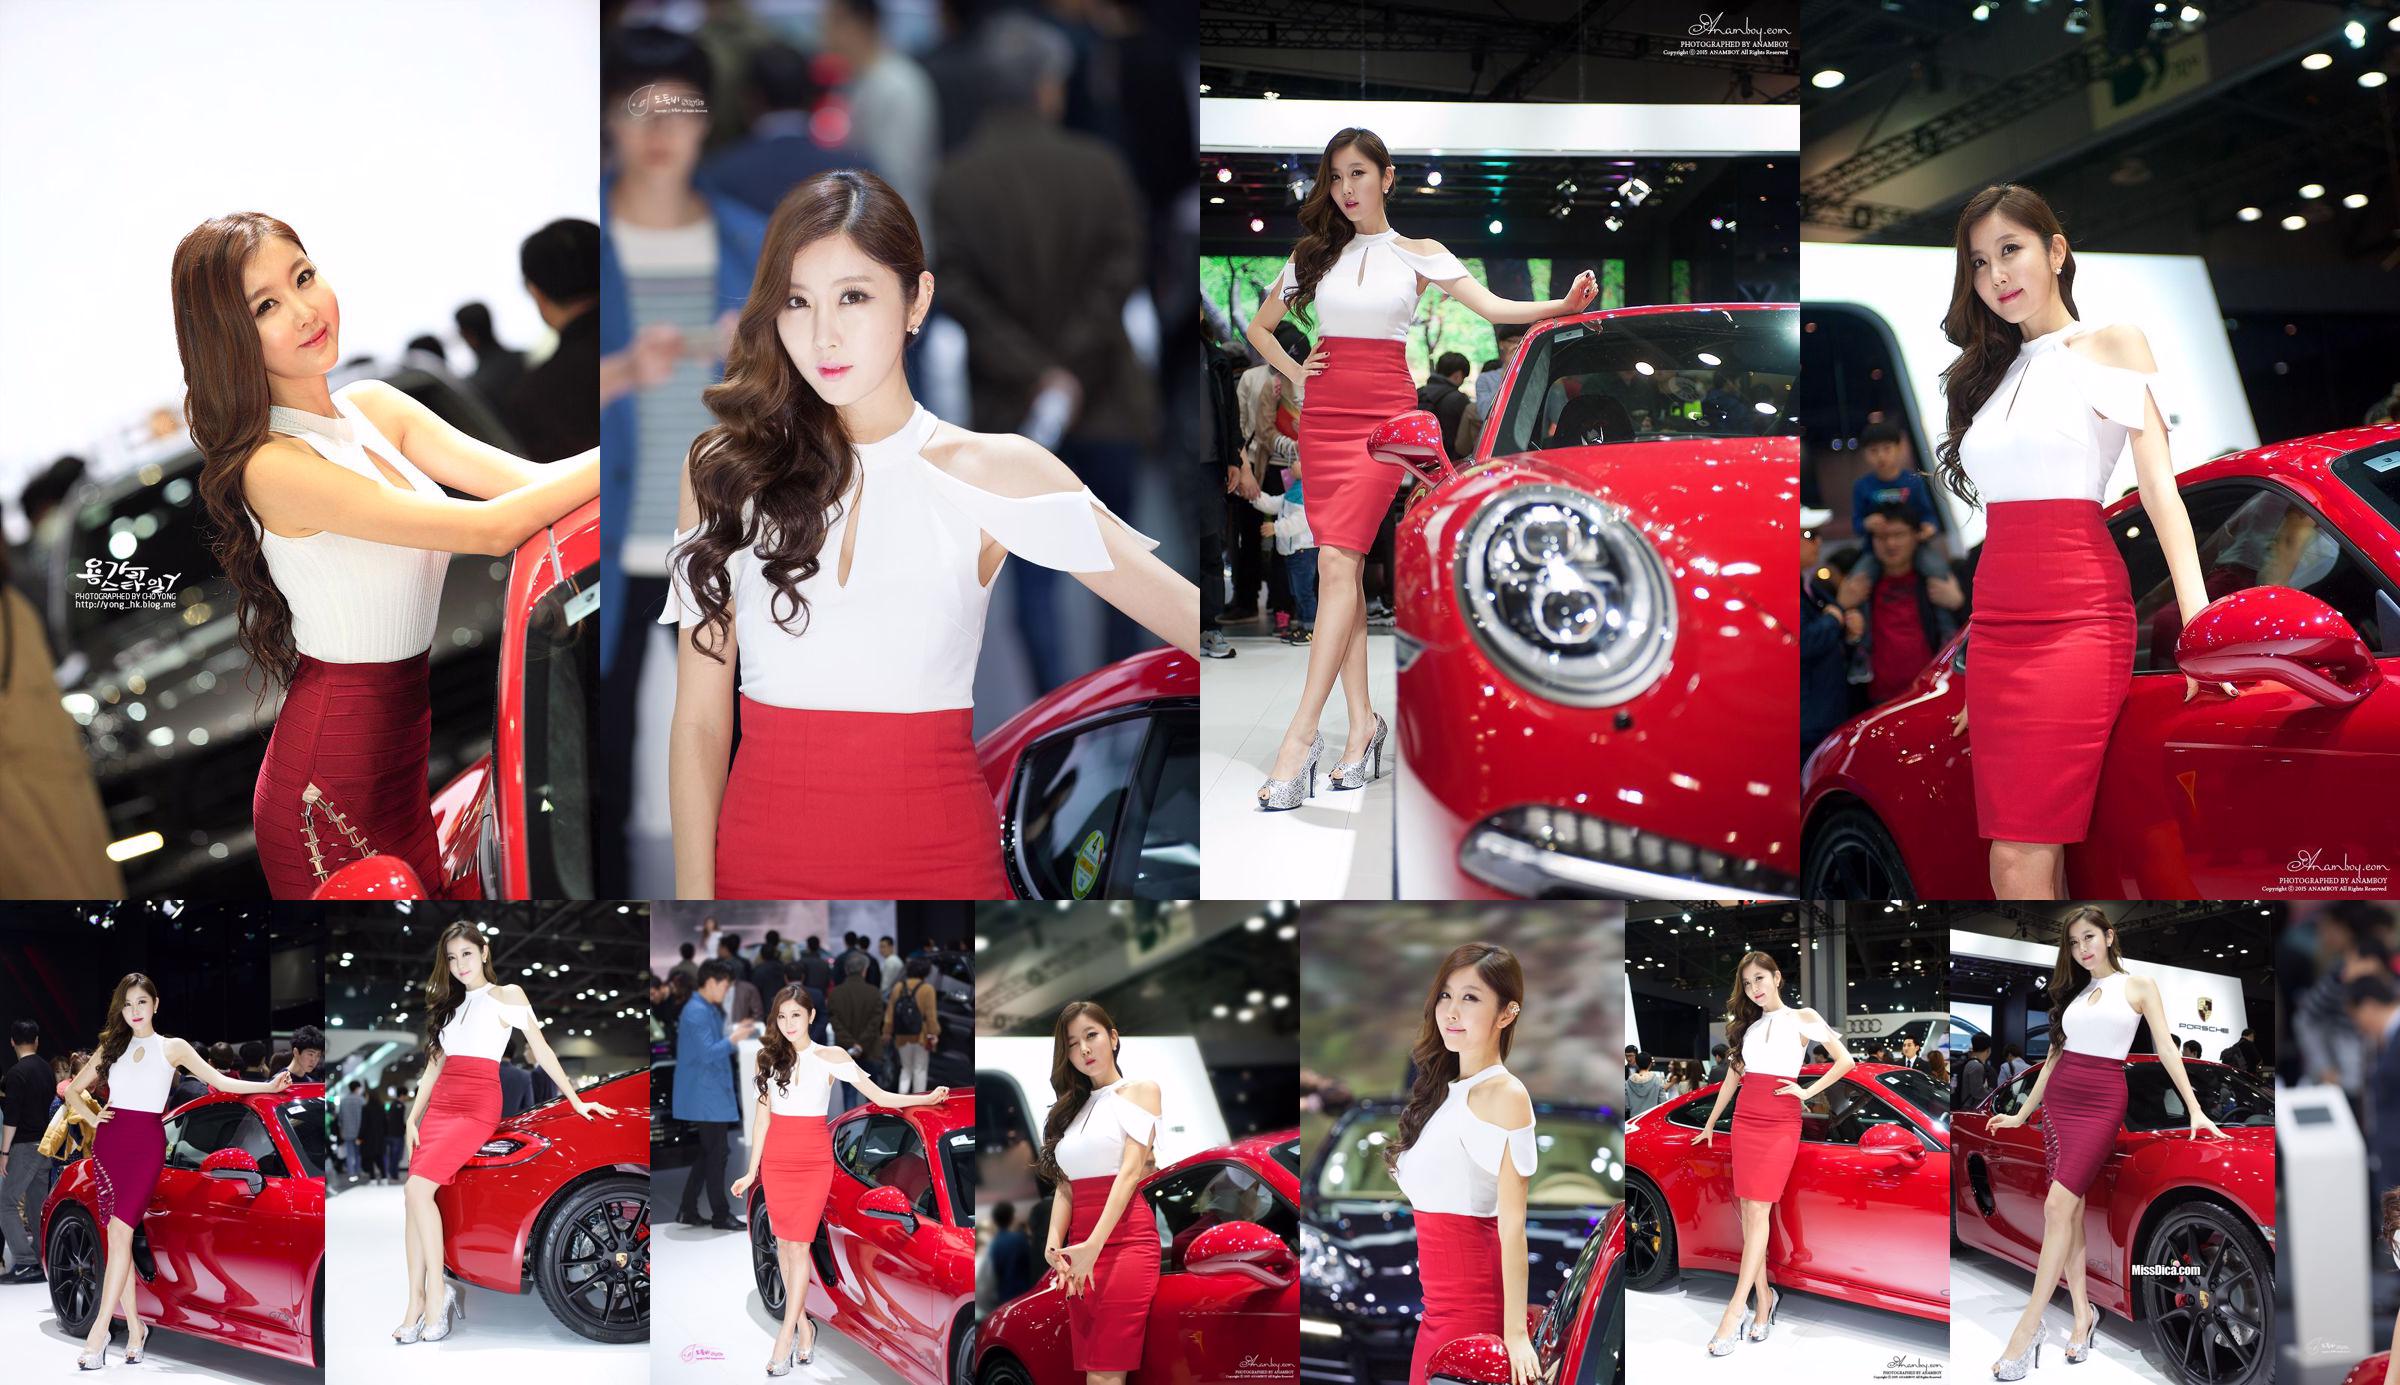 รวมภาพรถเกาหลีรุ่น Cui Xingya / "Red Skirt Series ของ Cui Xinger ที่งานออโต้โชว์" No.6da6cd หน้า 8